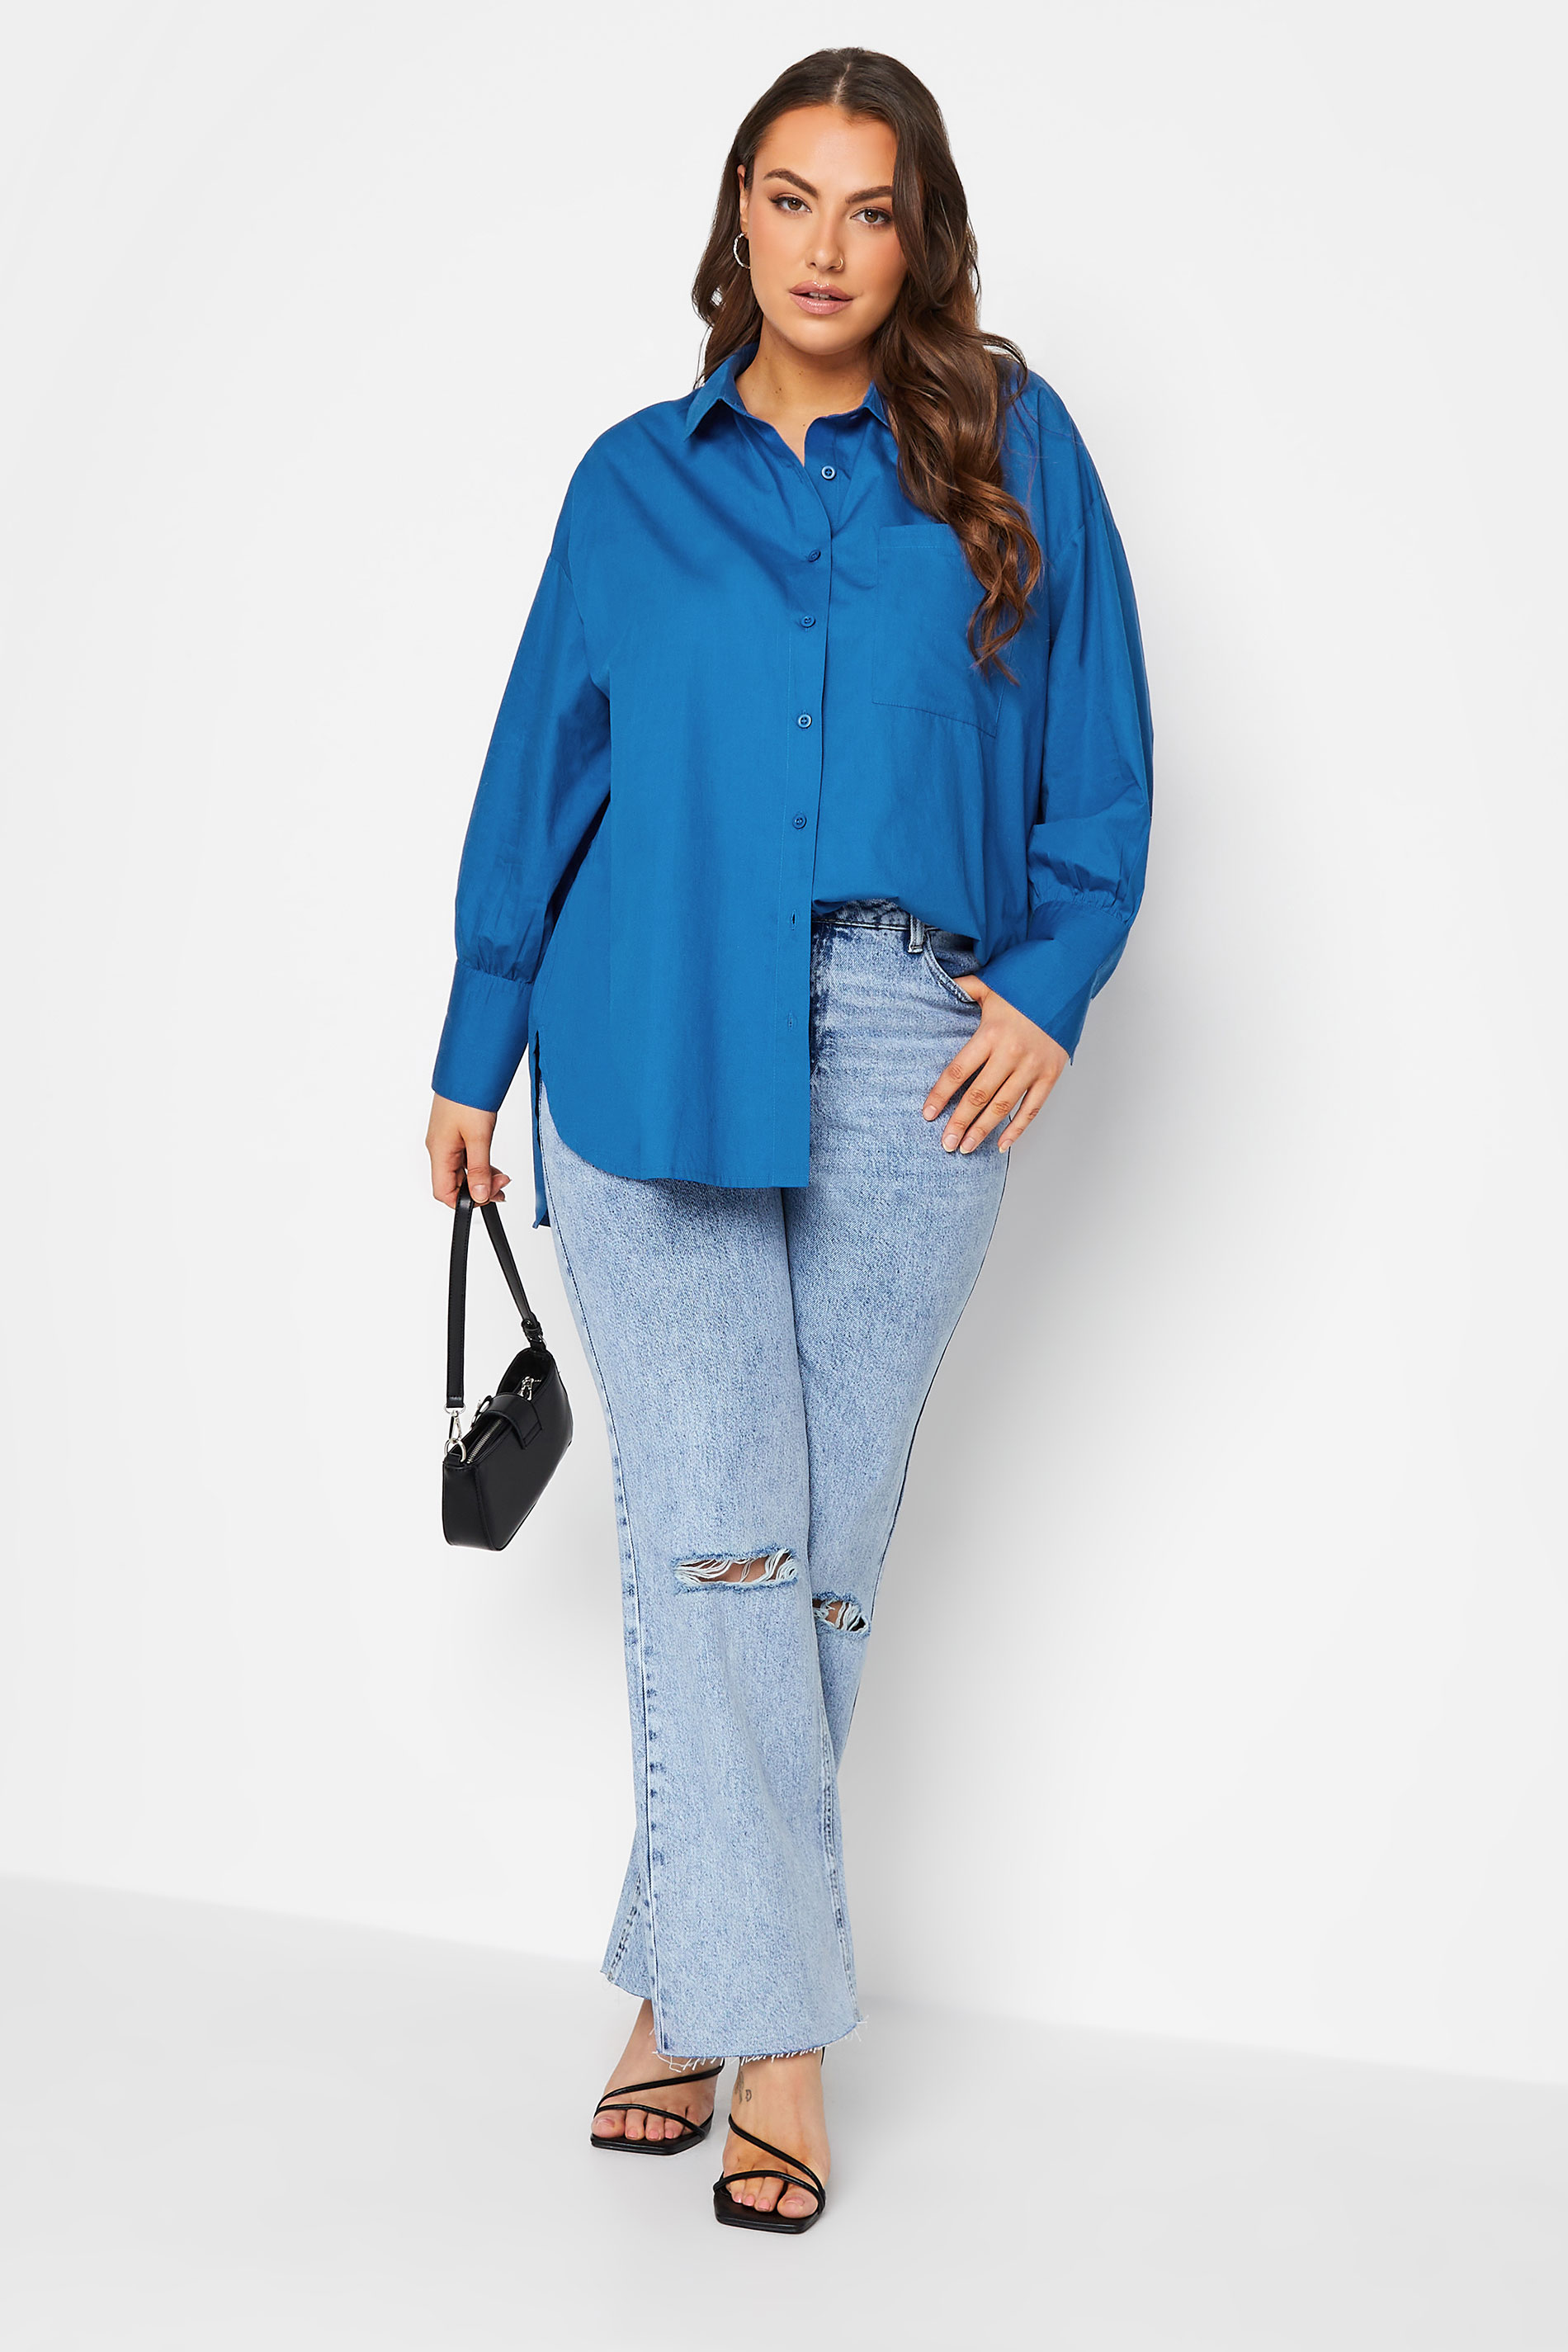 Plus Size Blue Oversized Poplin Shirt | Yours Clothing 2